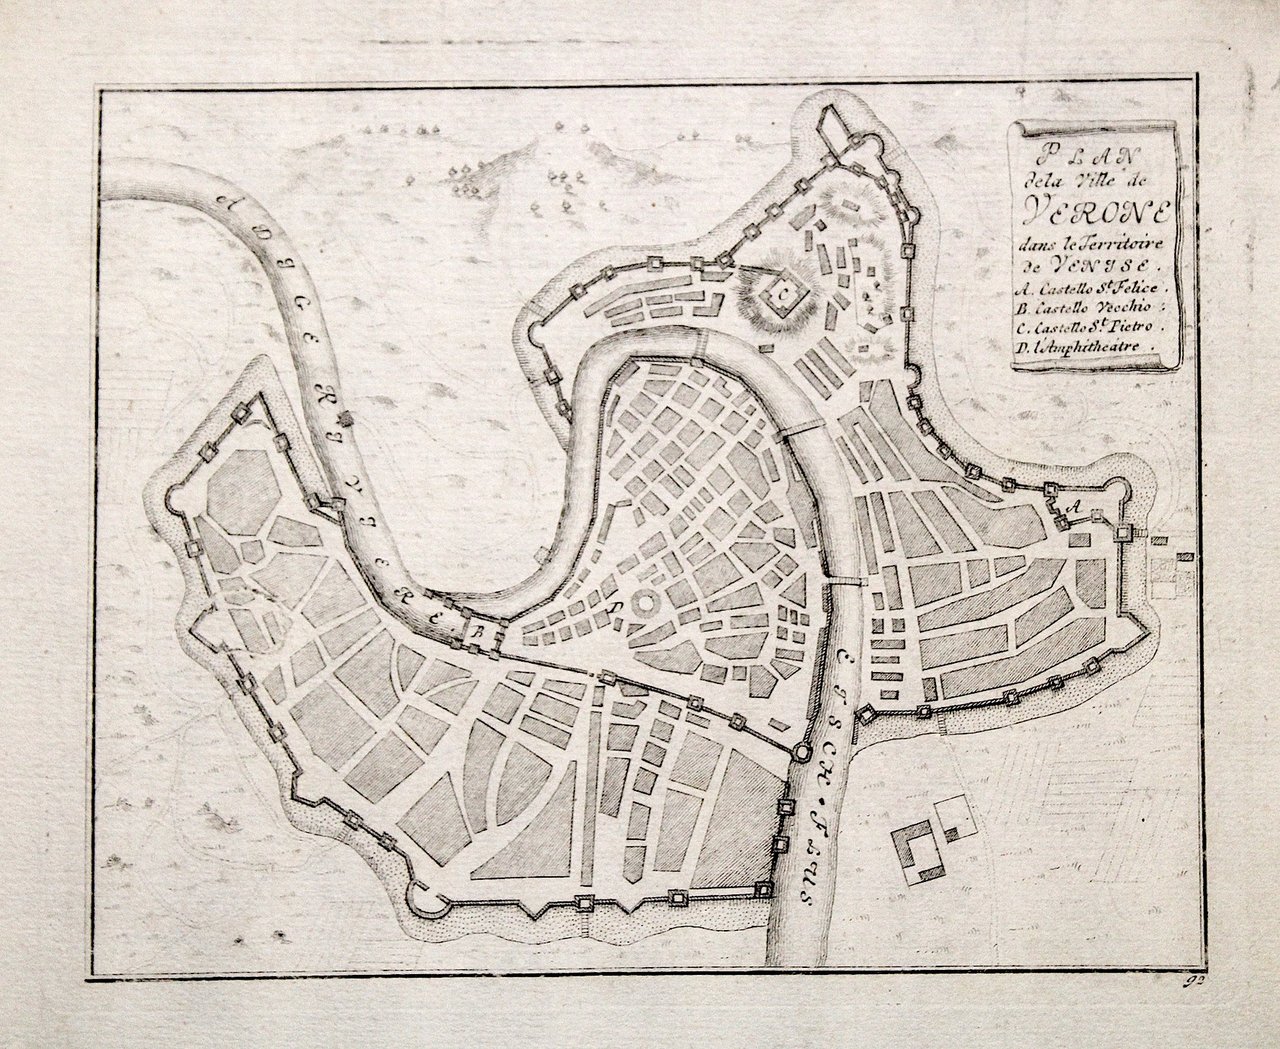 Plan de la Ville de Verone dans le territorie de …